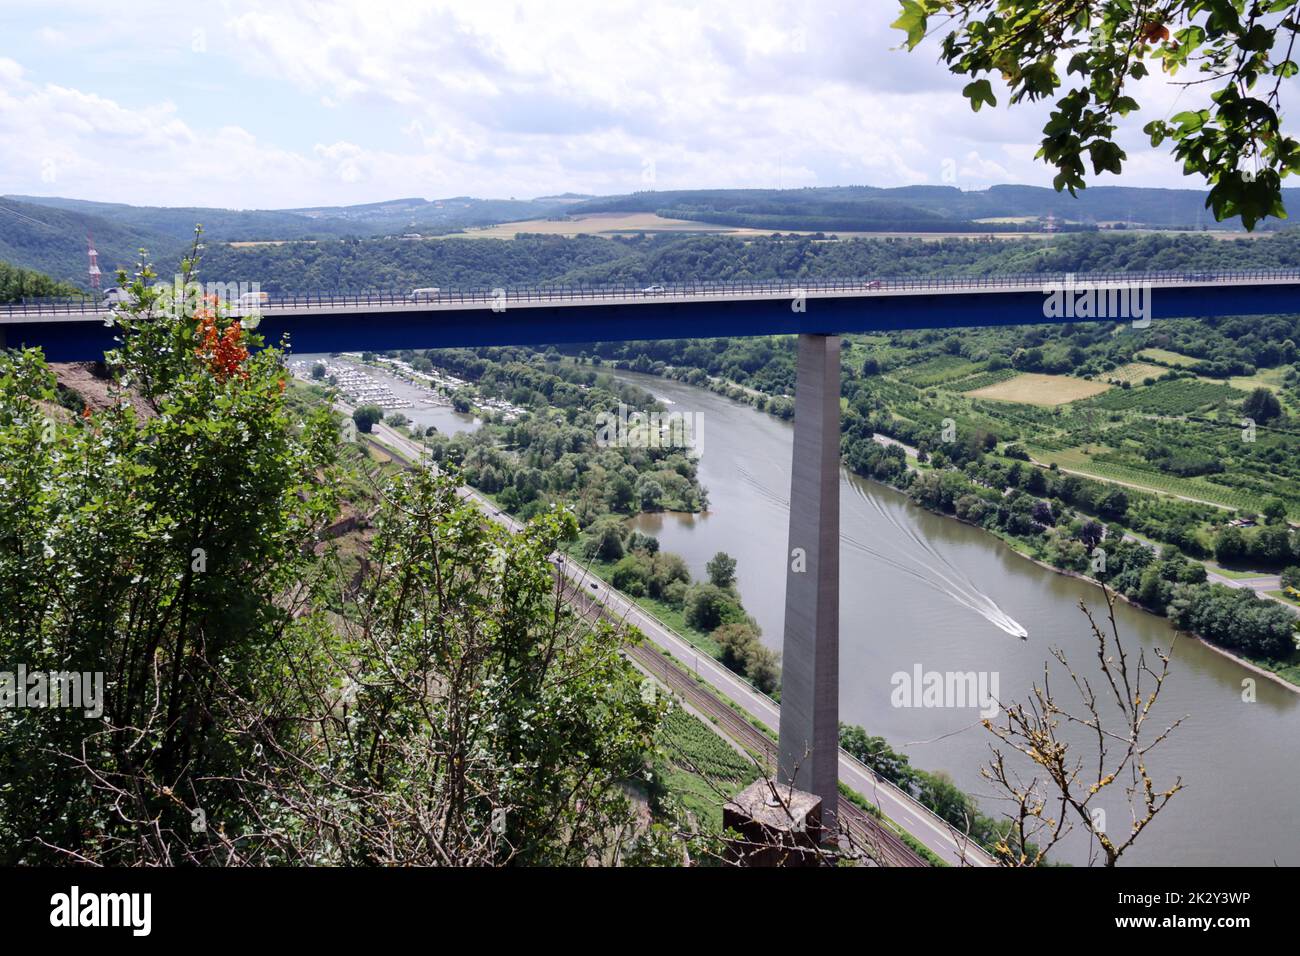 Blick vom Aussichtspunkt Blumsley an der Moseltalbrücke  auf die Mosel, Rheinland-Pfalz, Deutschland, Dieblich Stock Photo